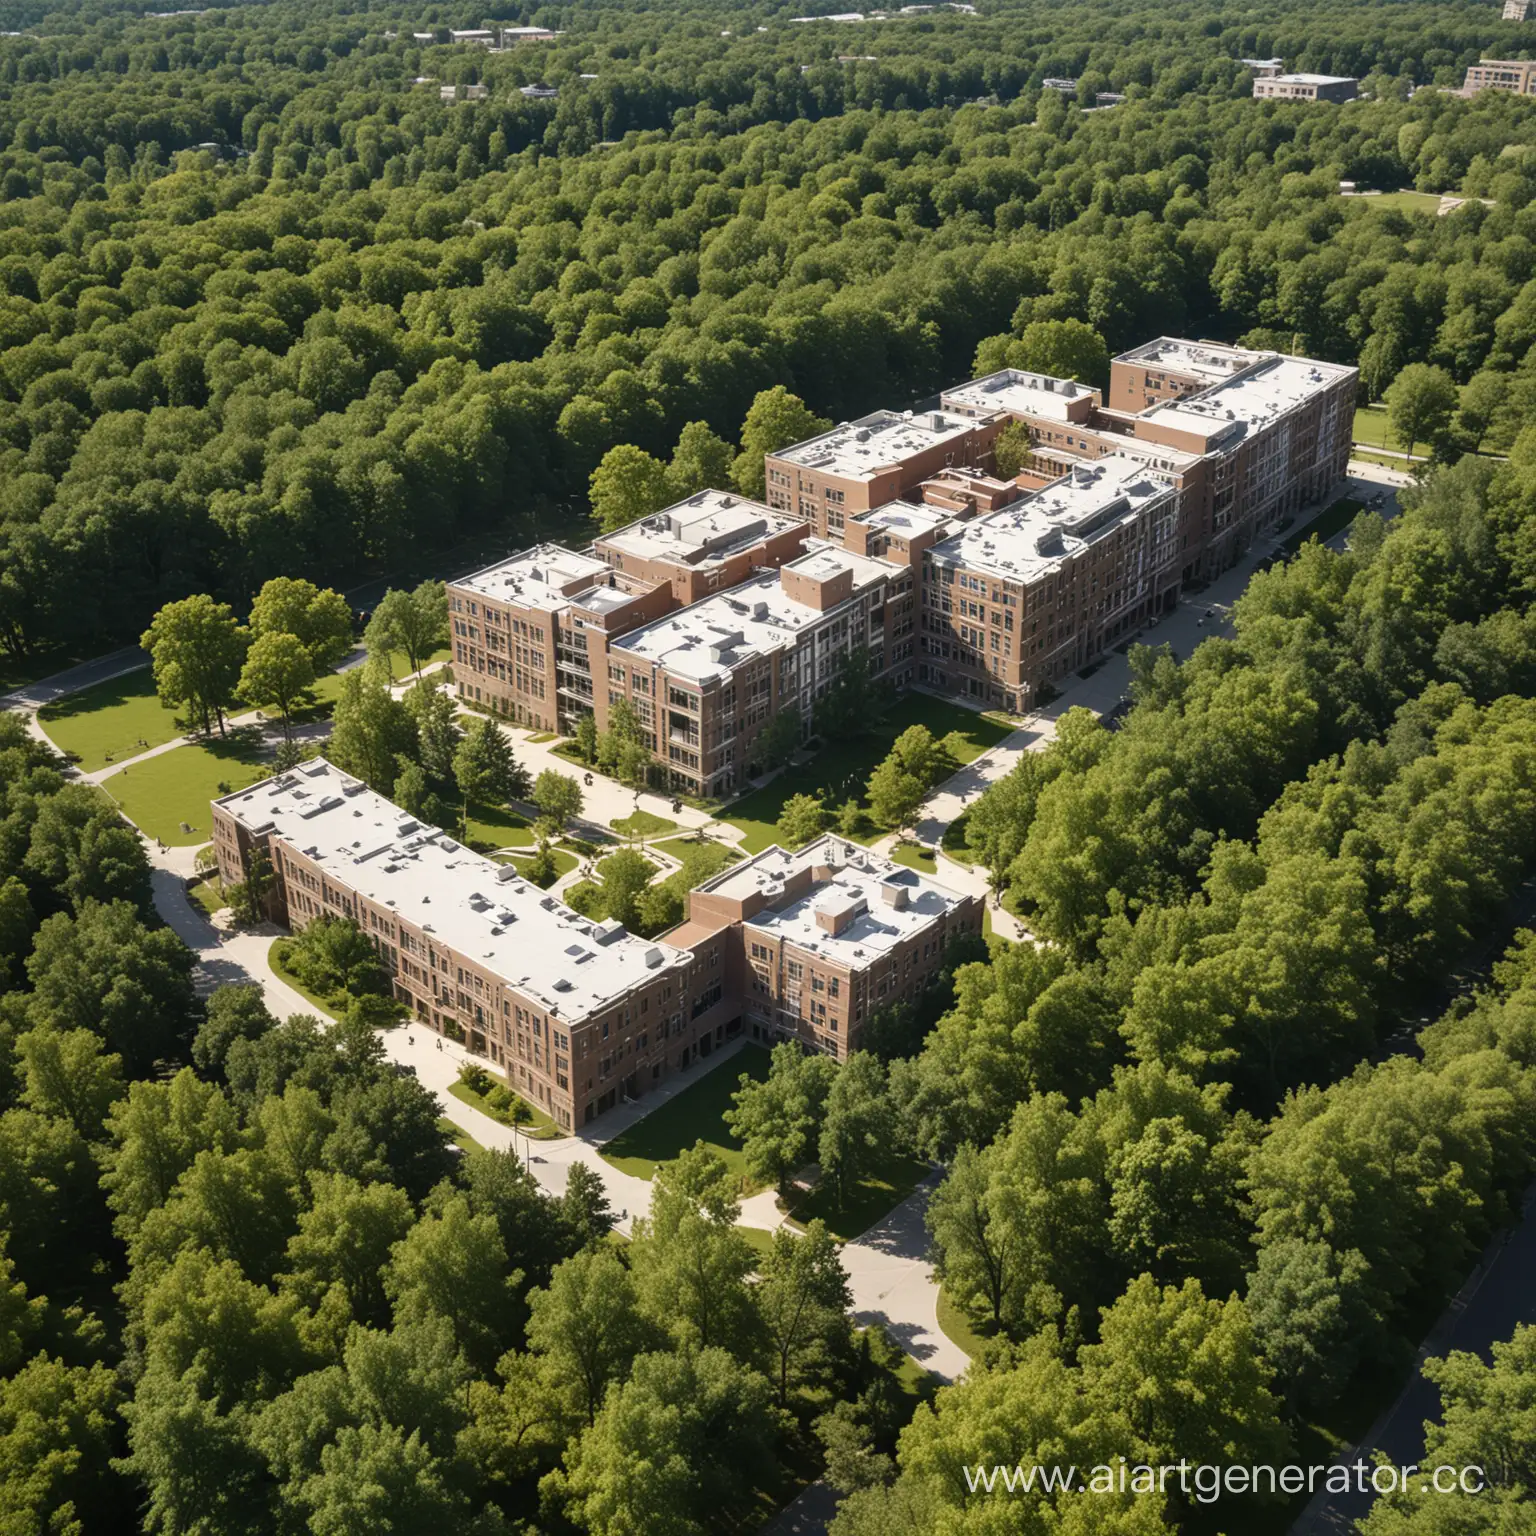 студенческий кампус с учебным корпусом в 5 этажей и общежитием в летний период в окружении деревьев
